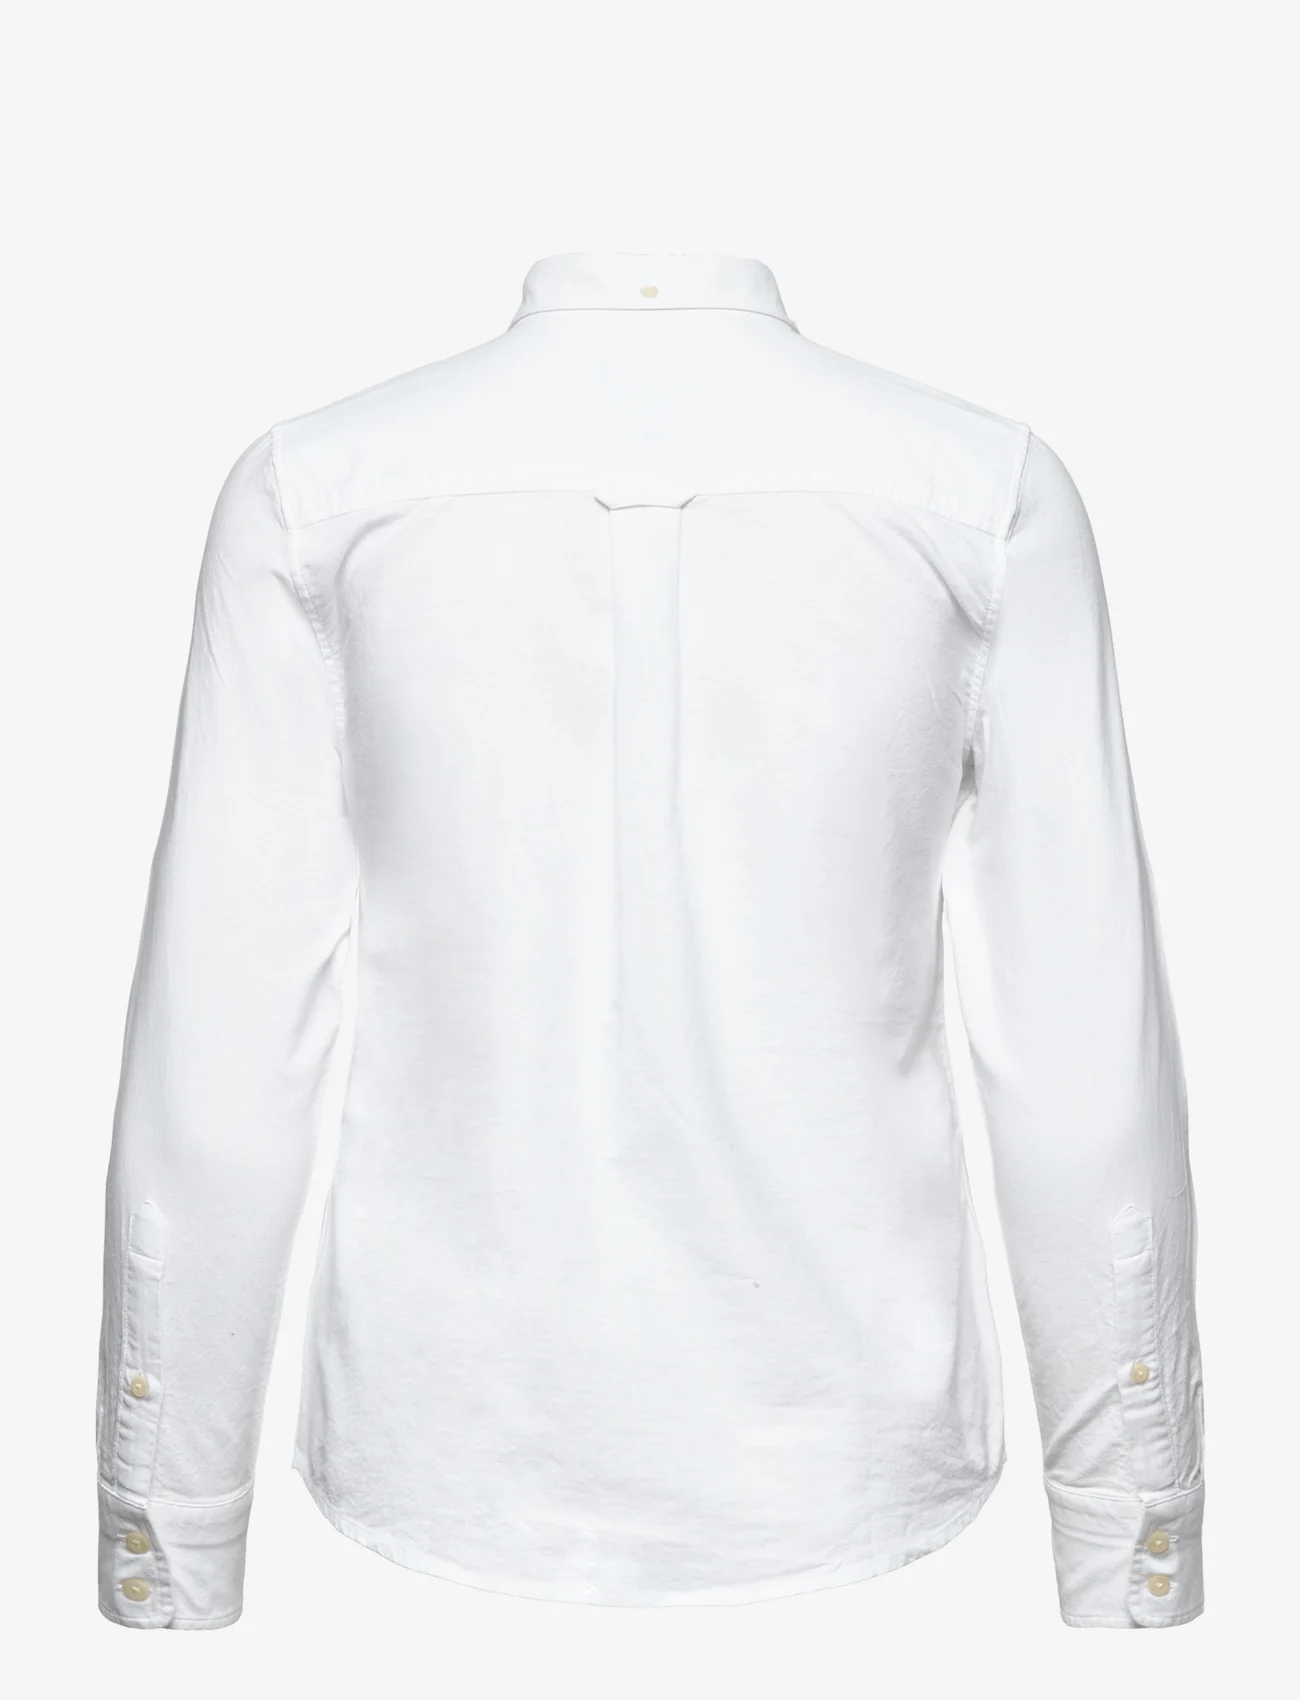 GANT - OXFORD SHIRT - langærmede skjorter - white - 1